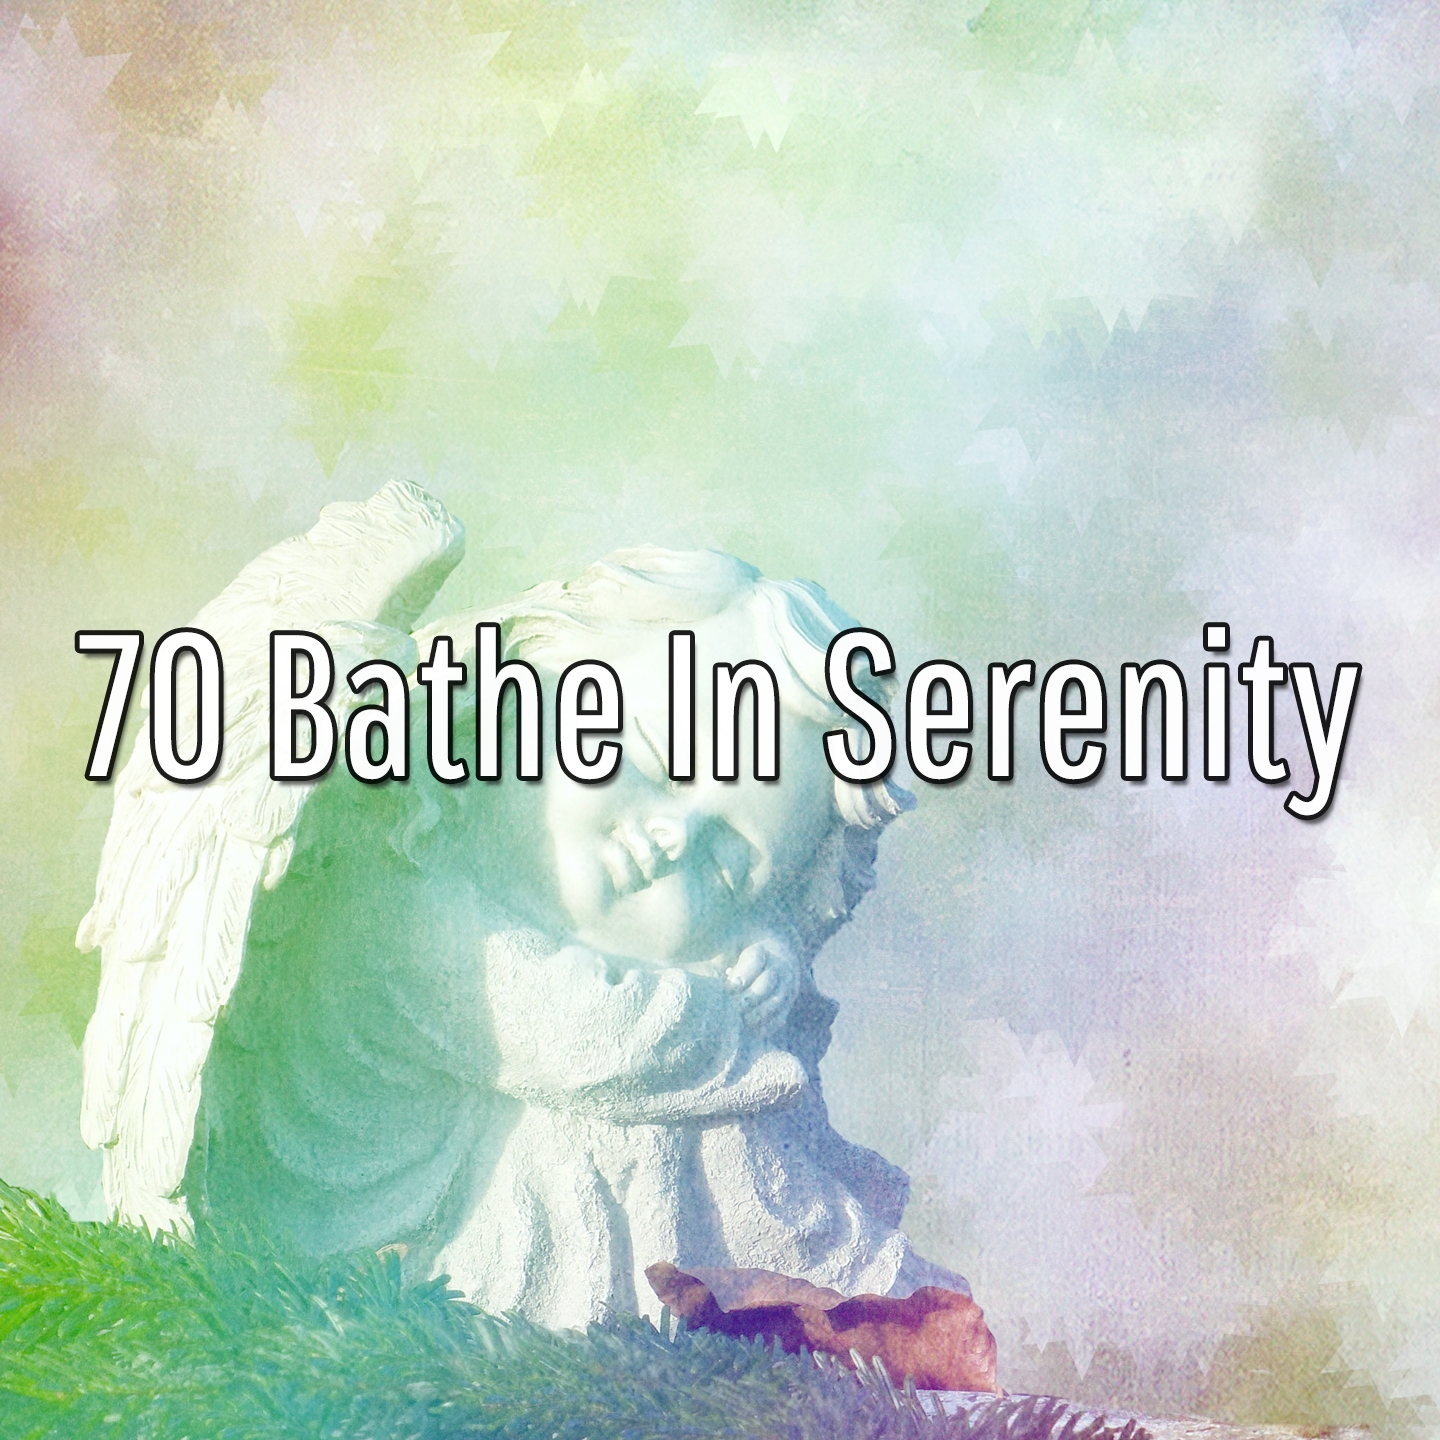 70 Bathe In Serenity